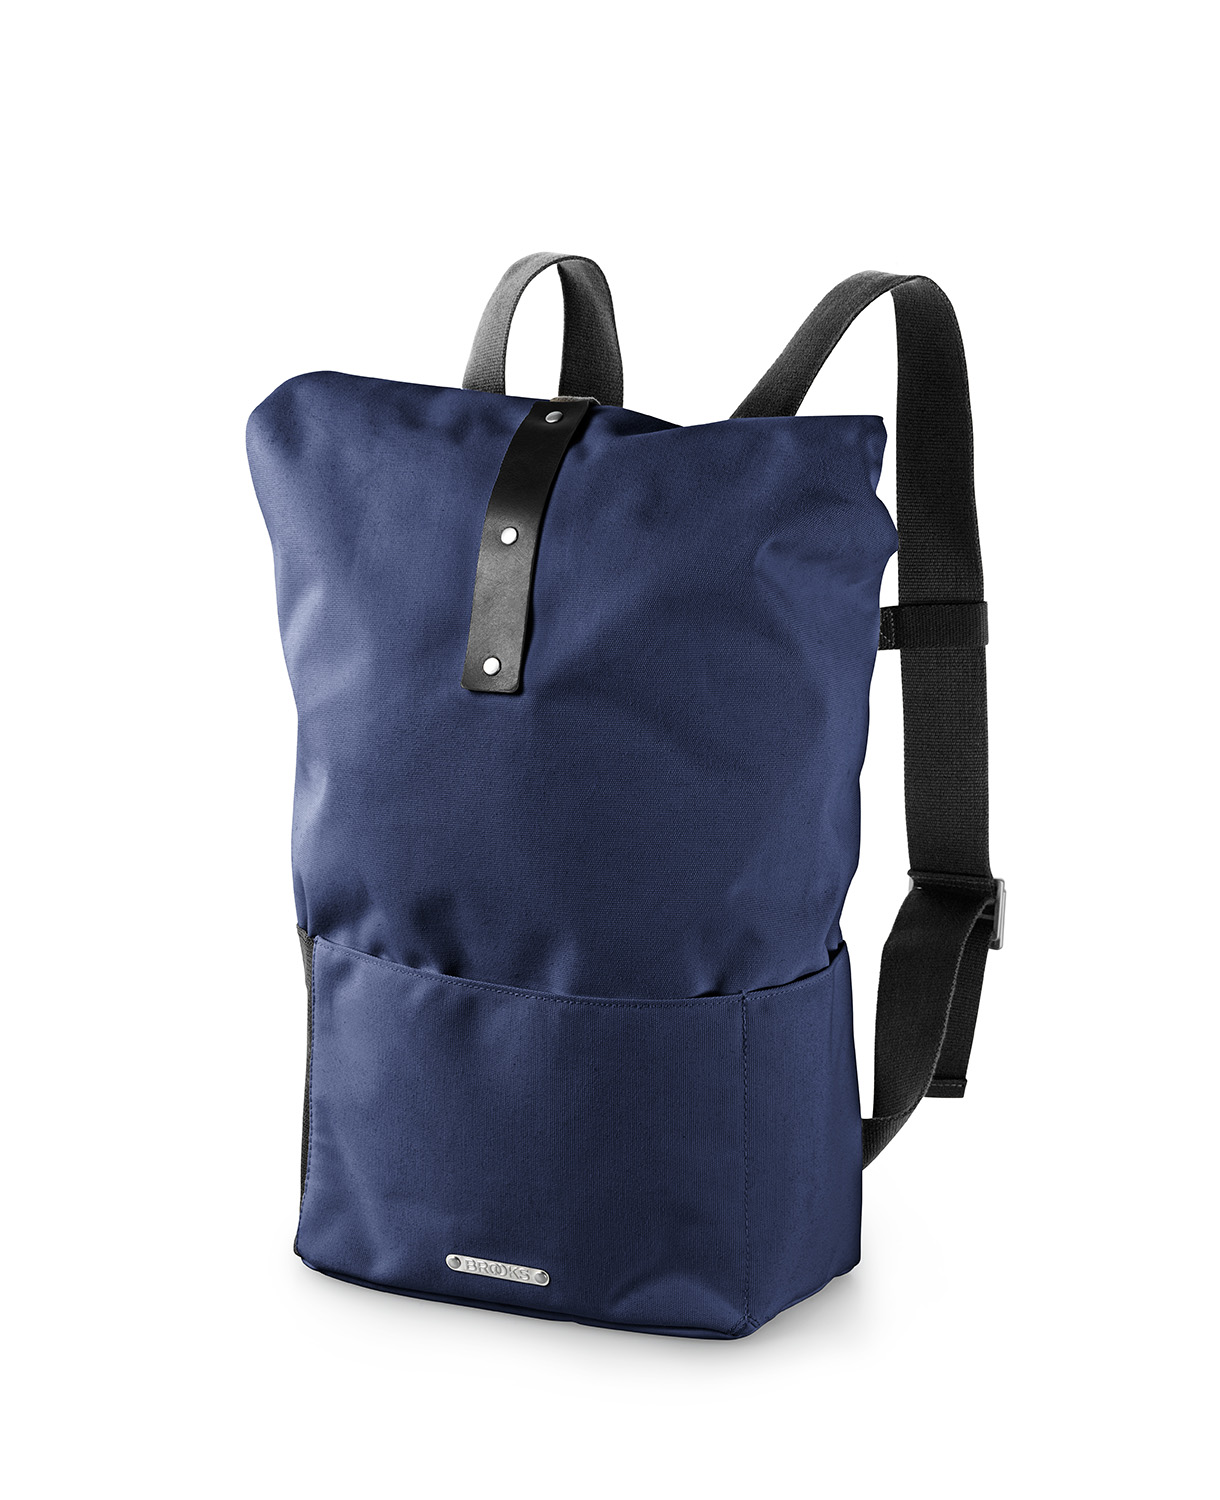 Hackney backpack blue black   front